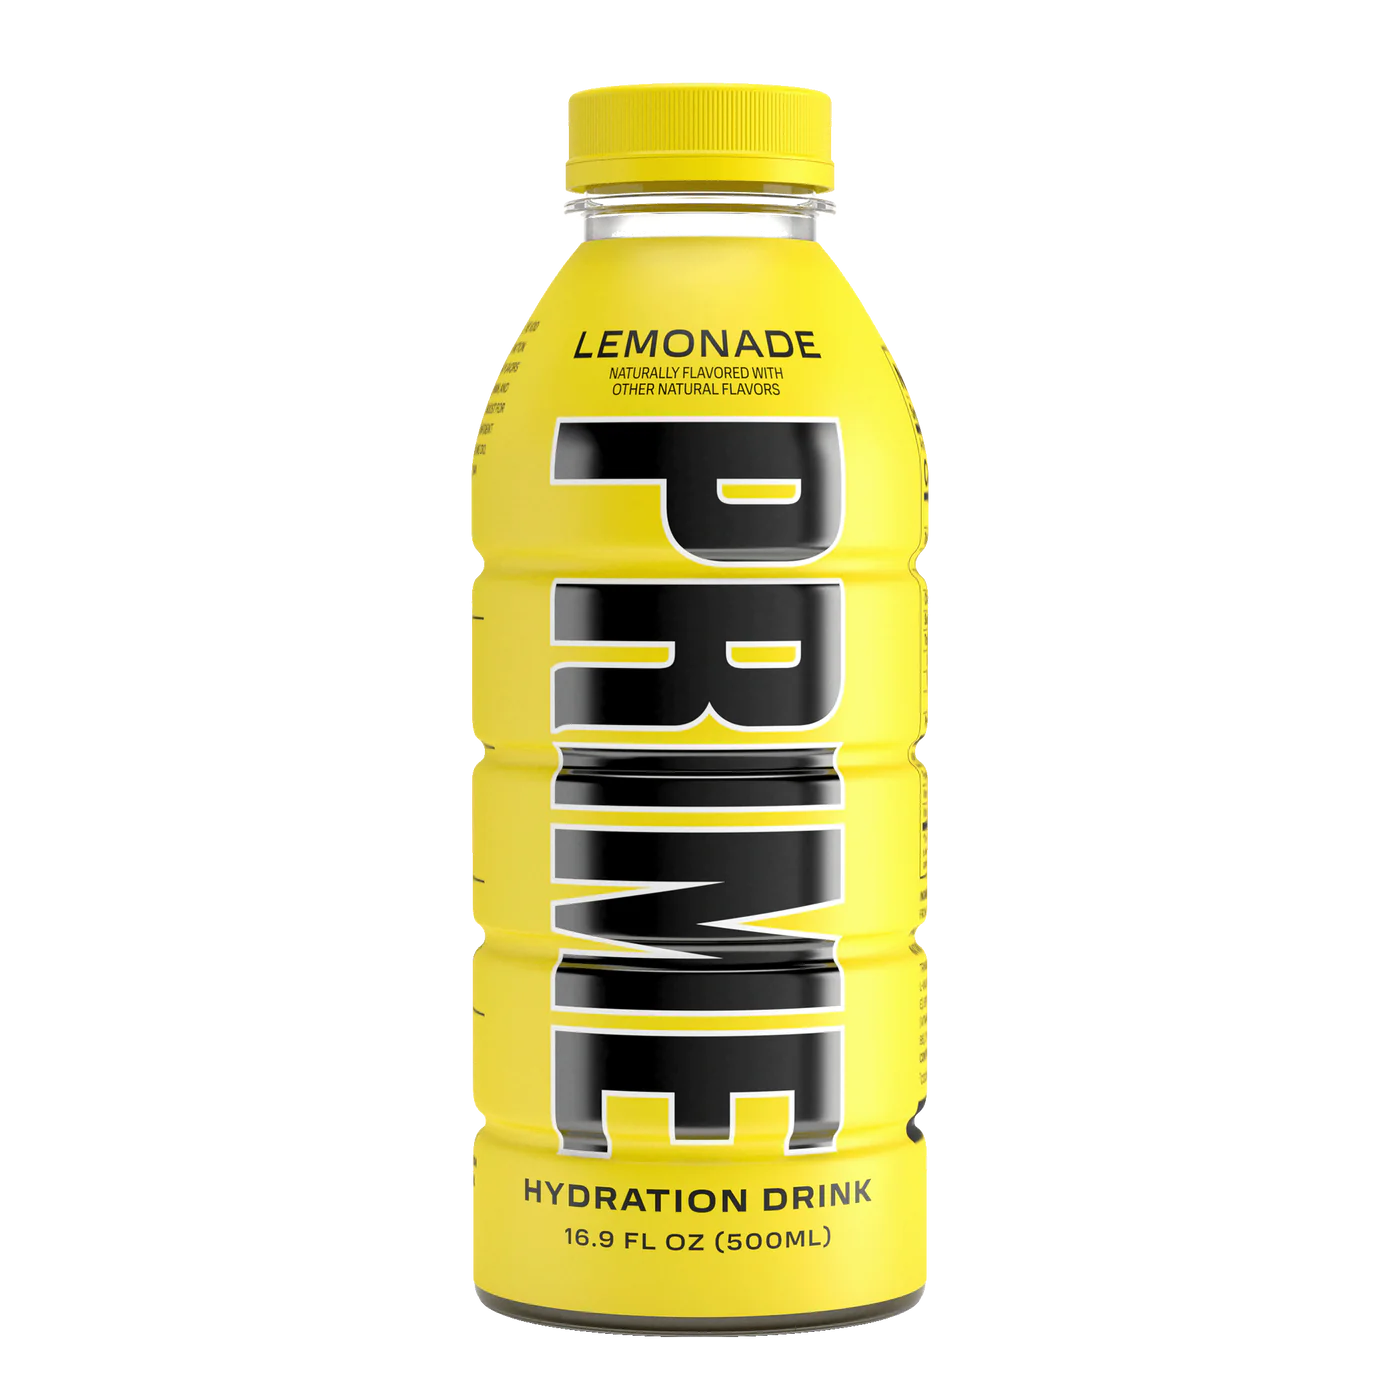 Prime Drink Hydration Lemonade 500ml UK Bottle